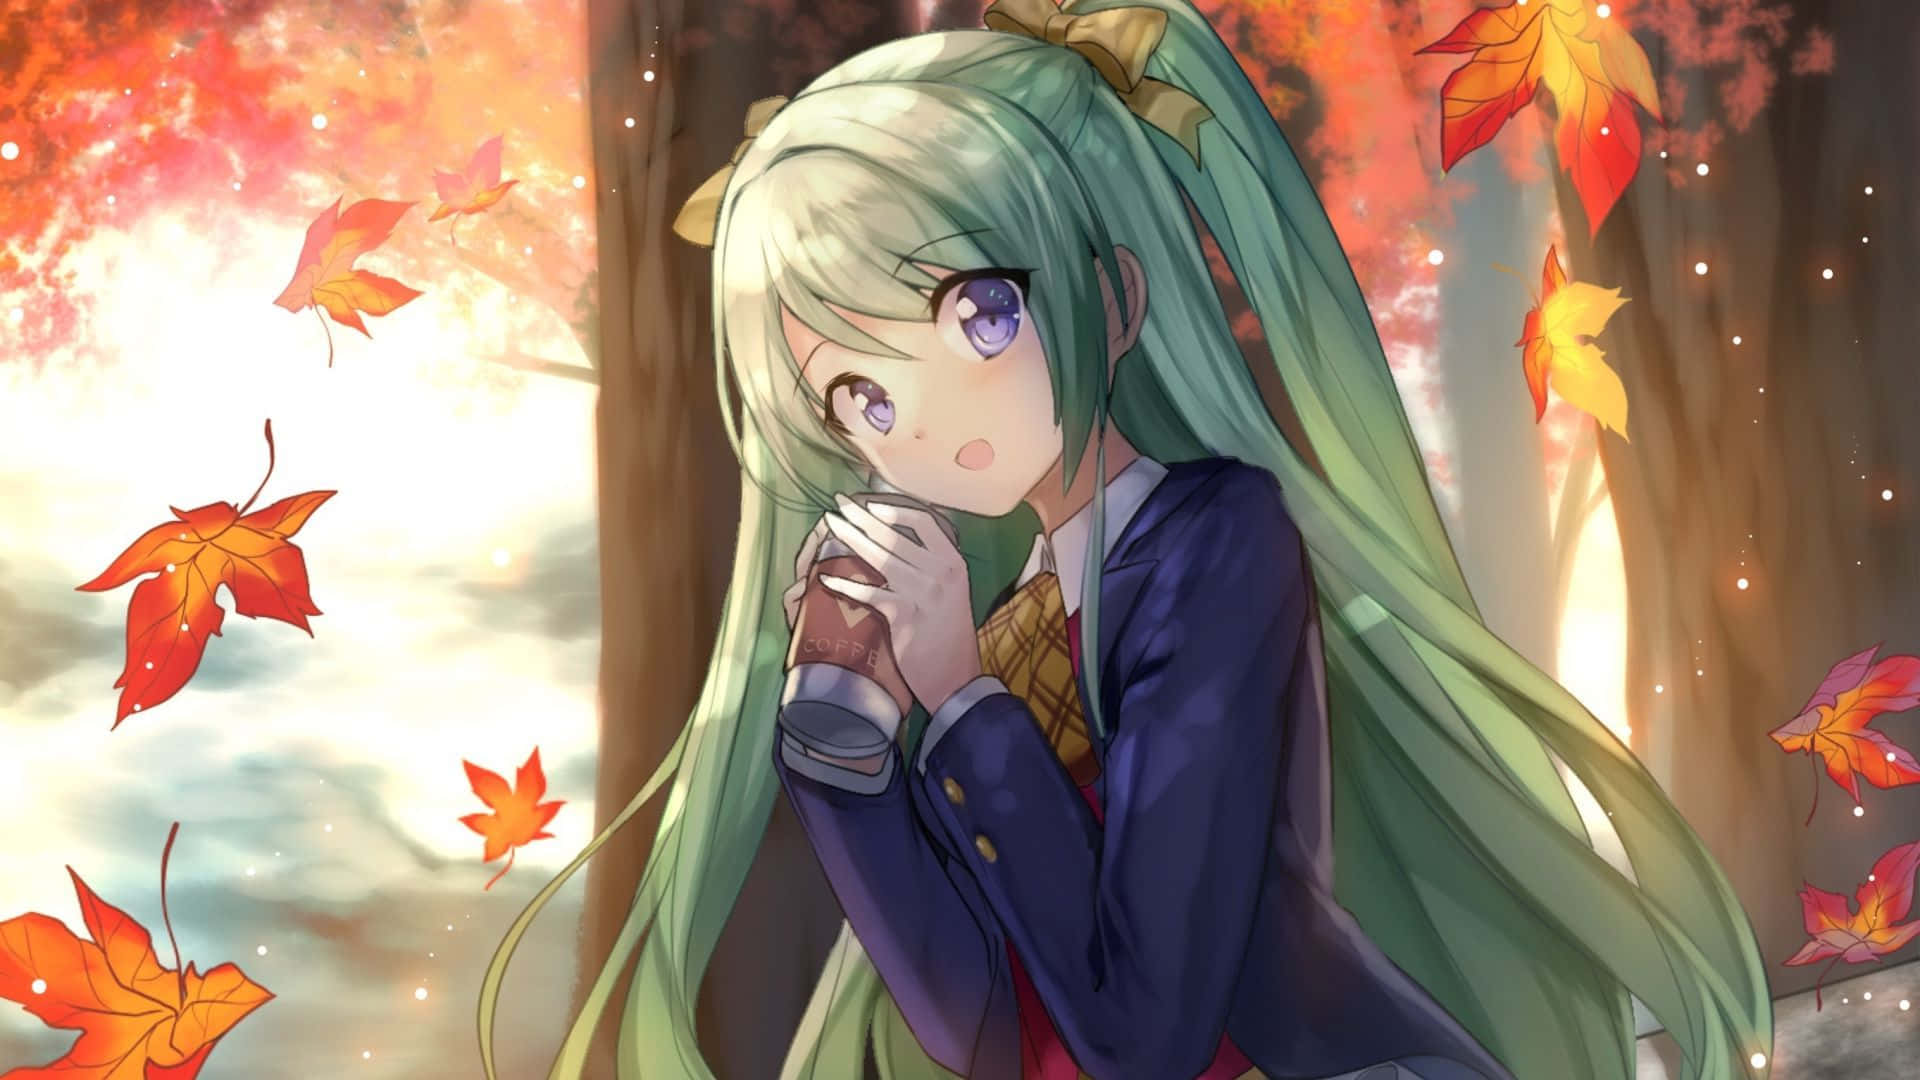 En pige med langt hår og grønne øjne sidder i en skovåbning. Wallpaper